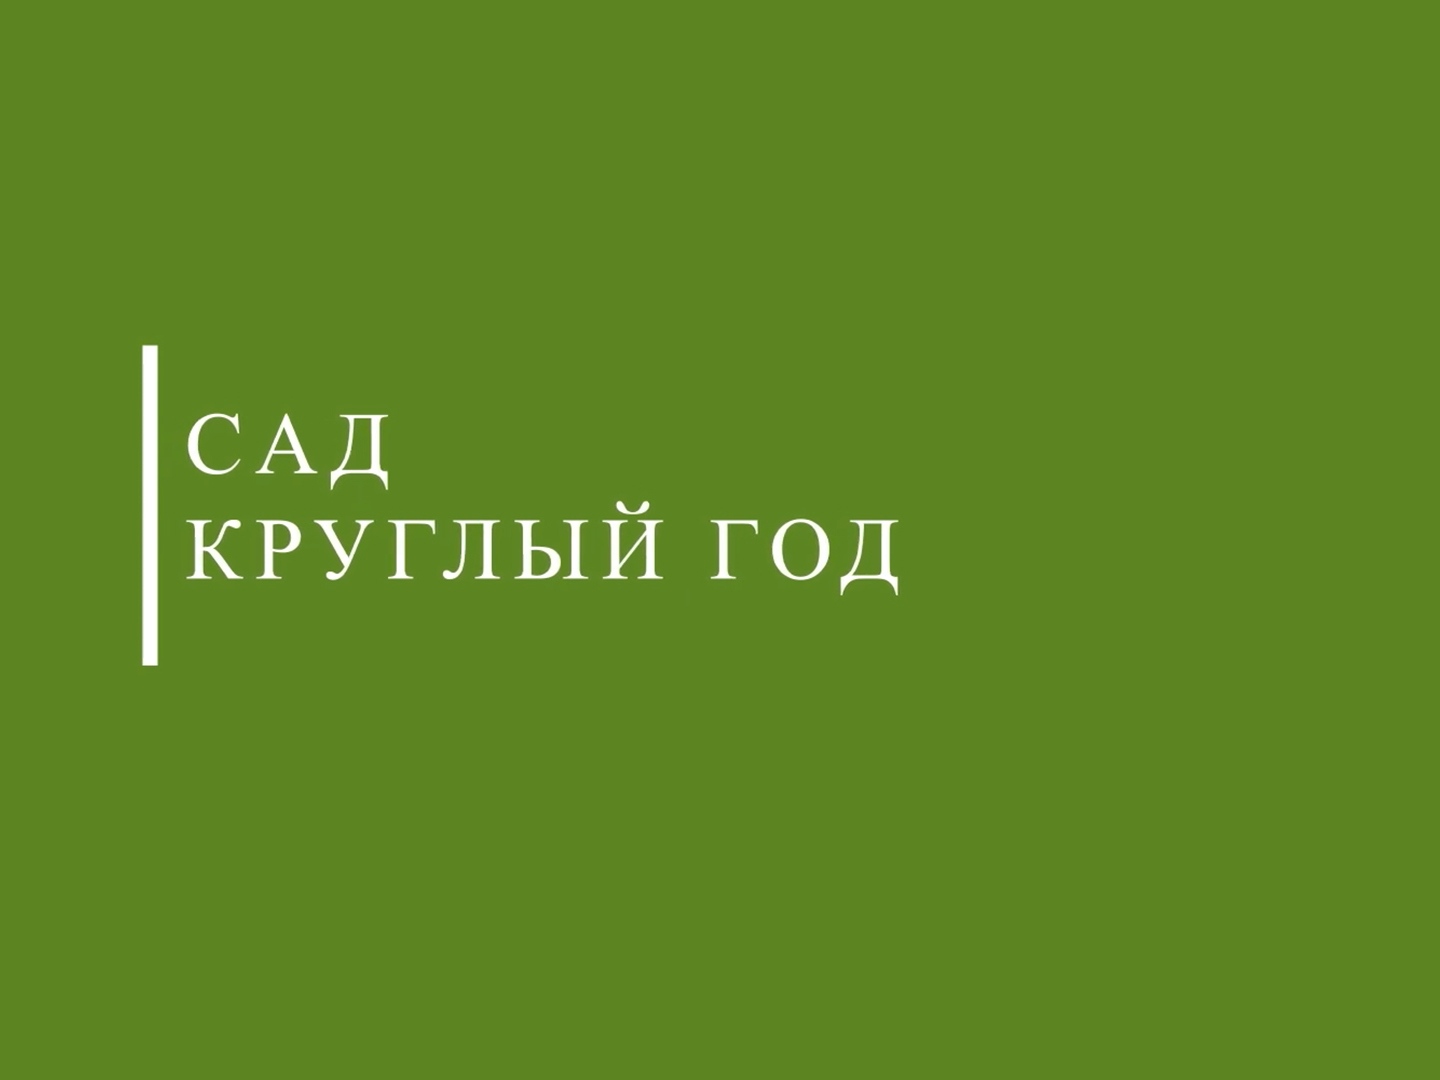 Сад круглый год. Plantic логотип. Плантик.